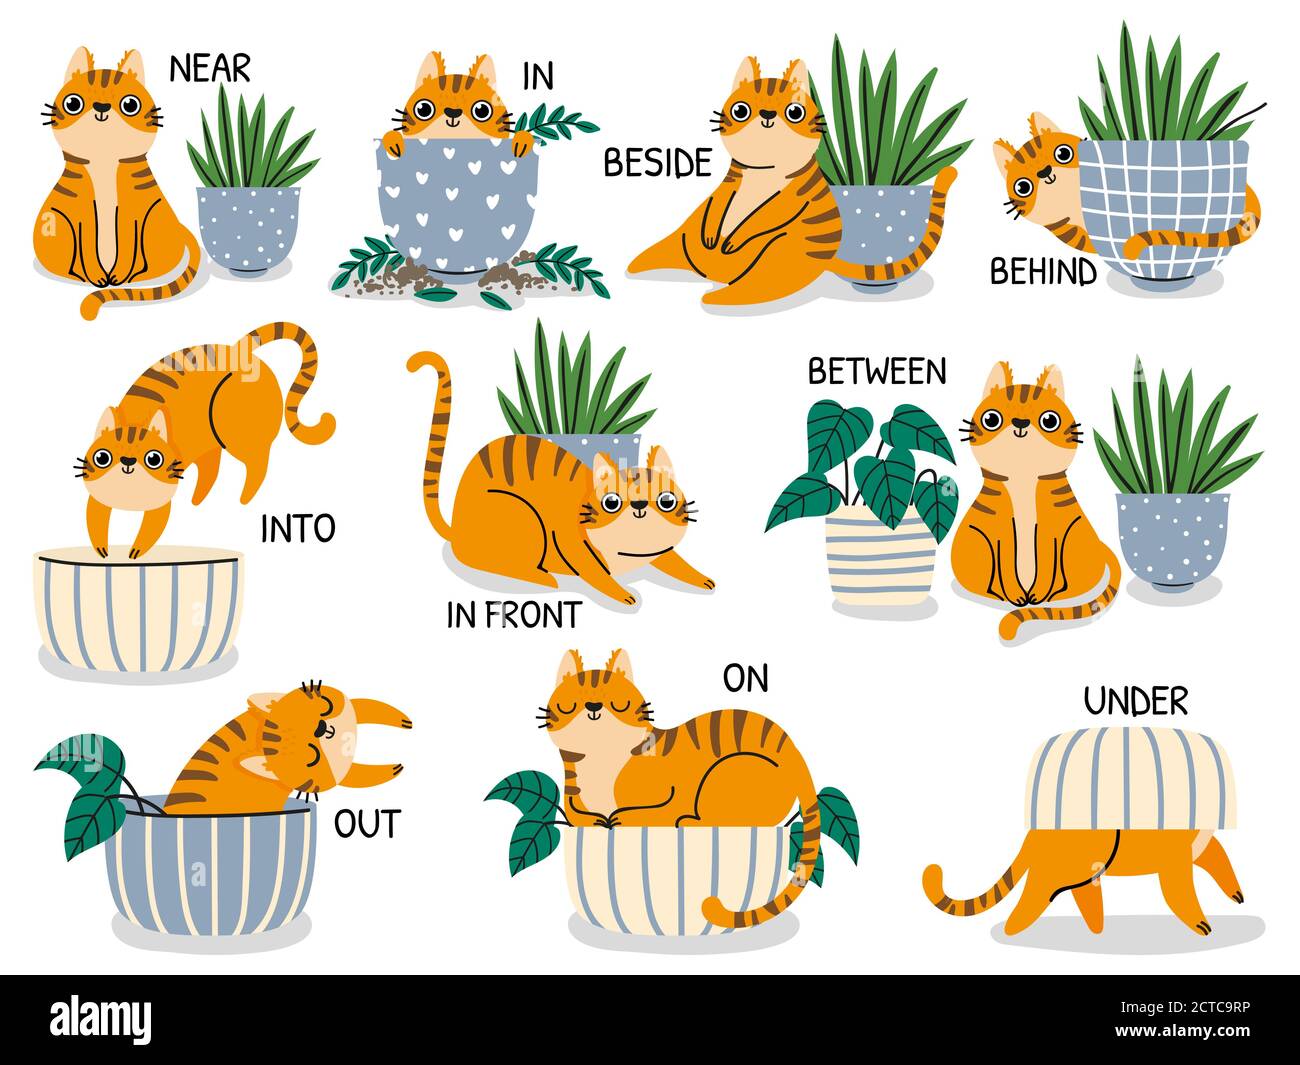 Englische Präpositionen. Pädagogisches visuelles Material für Kinder, die Sprache lernen. Niedliche Katze hinter, über, in der Nähe und unter Blumentopf Vektor-Set. Fremd la Stock Vektor